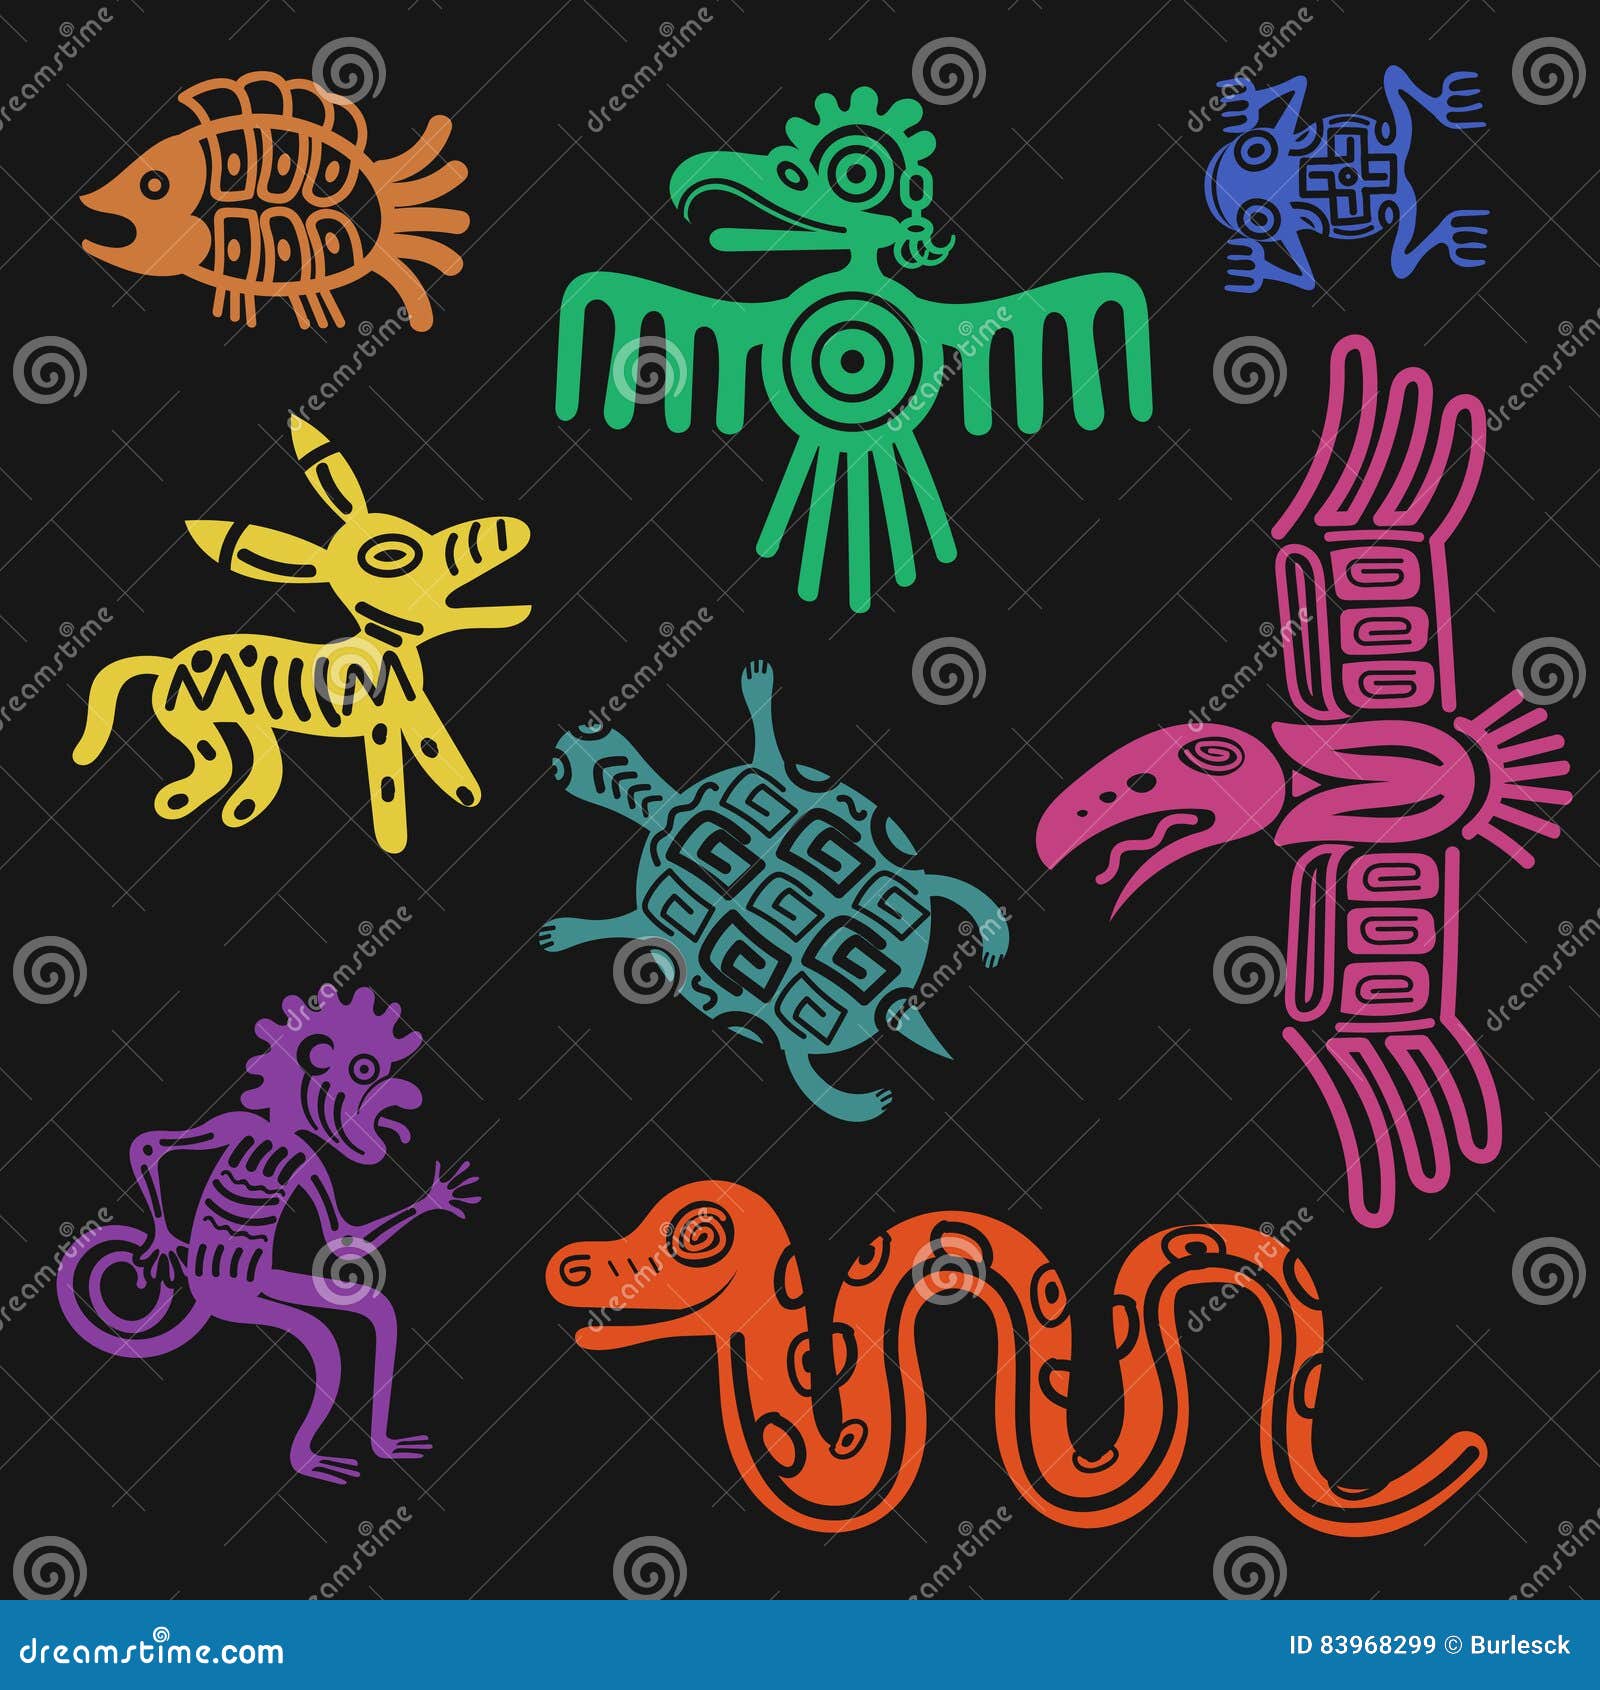 Inca Symbols - Inca Meanings - Meanings Inca Symbols